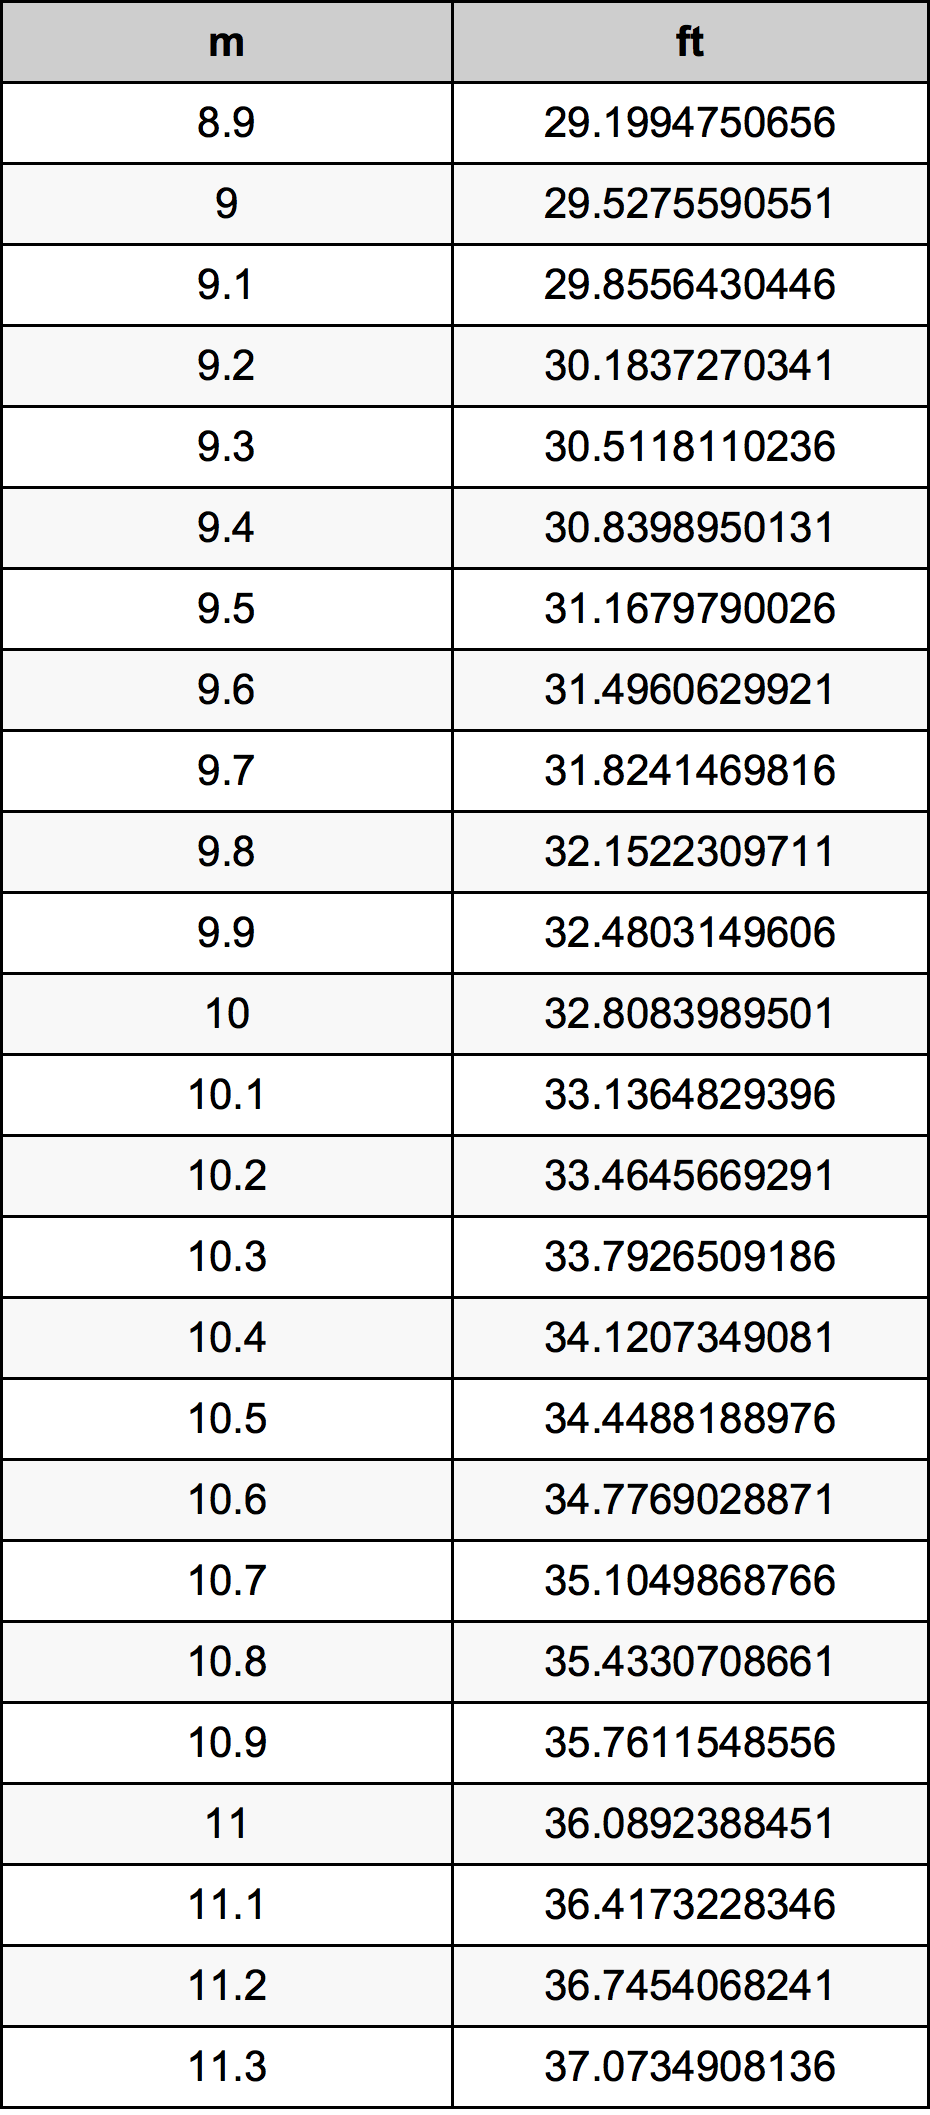 10.1 Metru tabelul de conversie